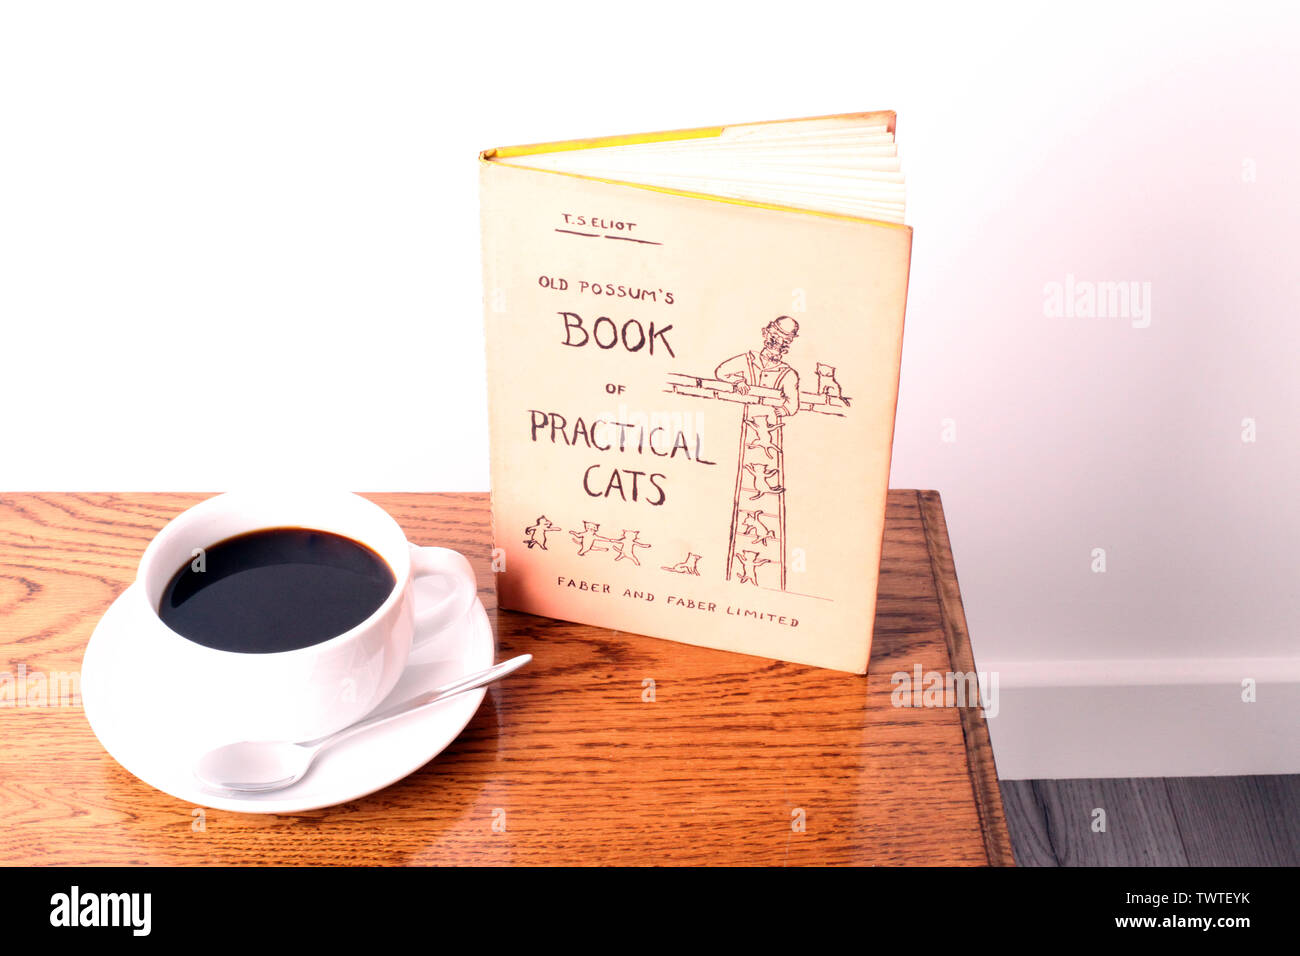 Possums vecchio libro di pratica Gatti - un libro di poesie di T.S. Eliot con una tazza di caffè nero su un tavolo da caffè in legno con sfondo bianco Foto Stock